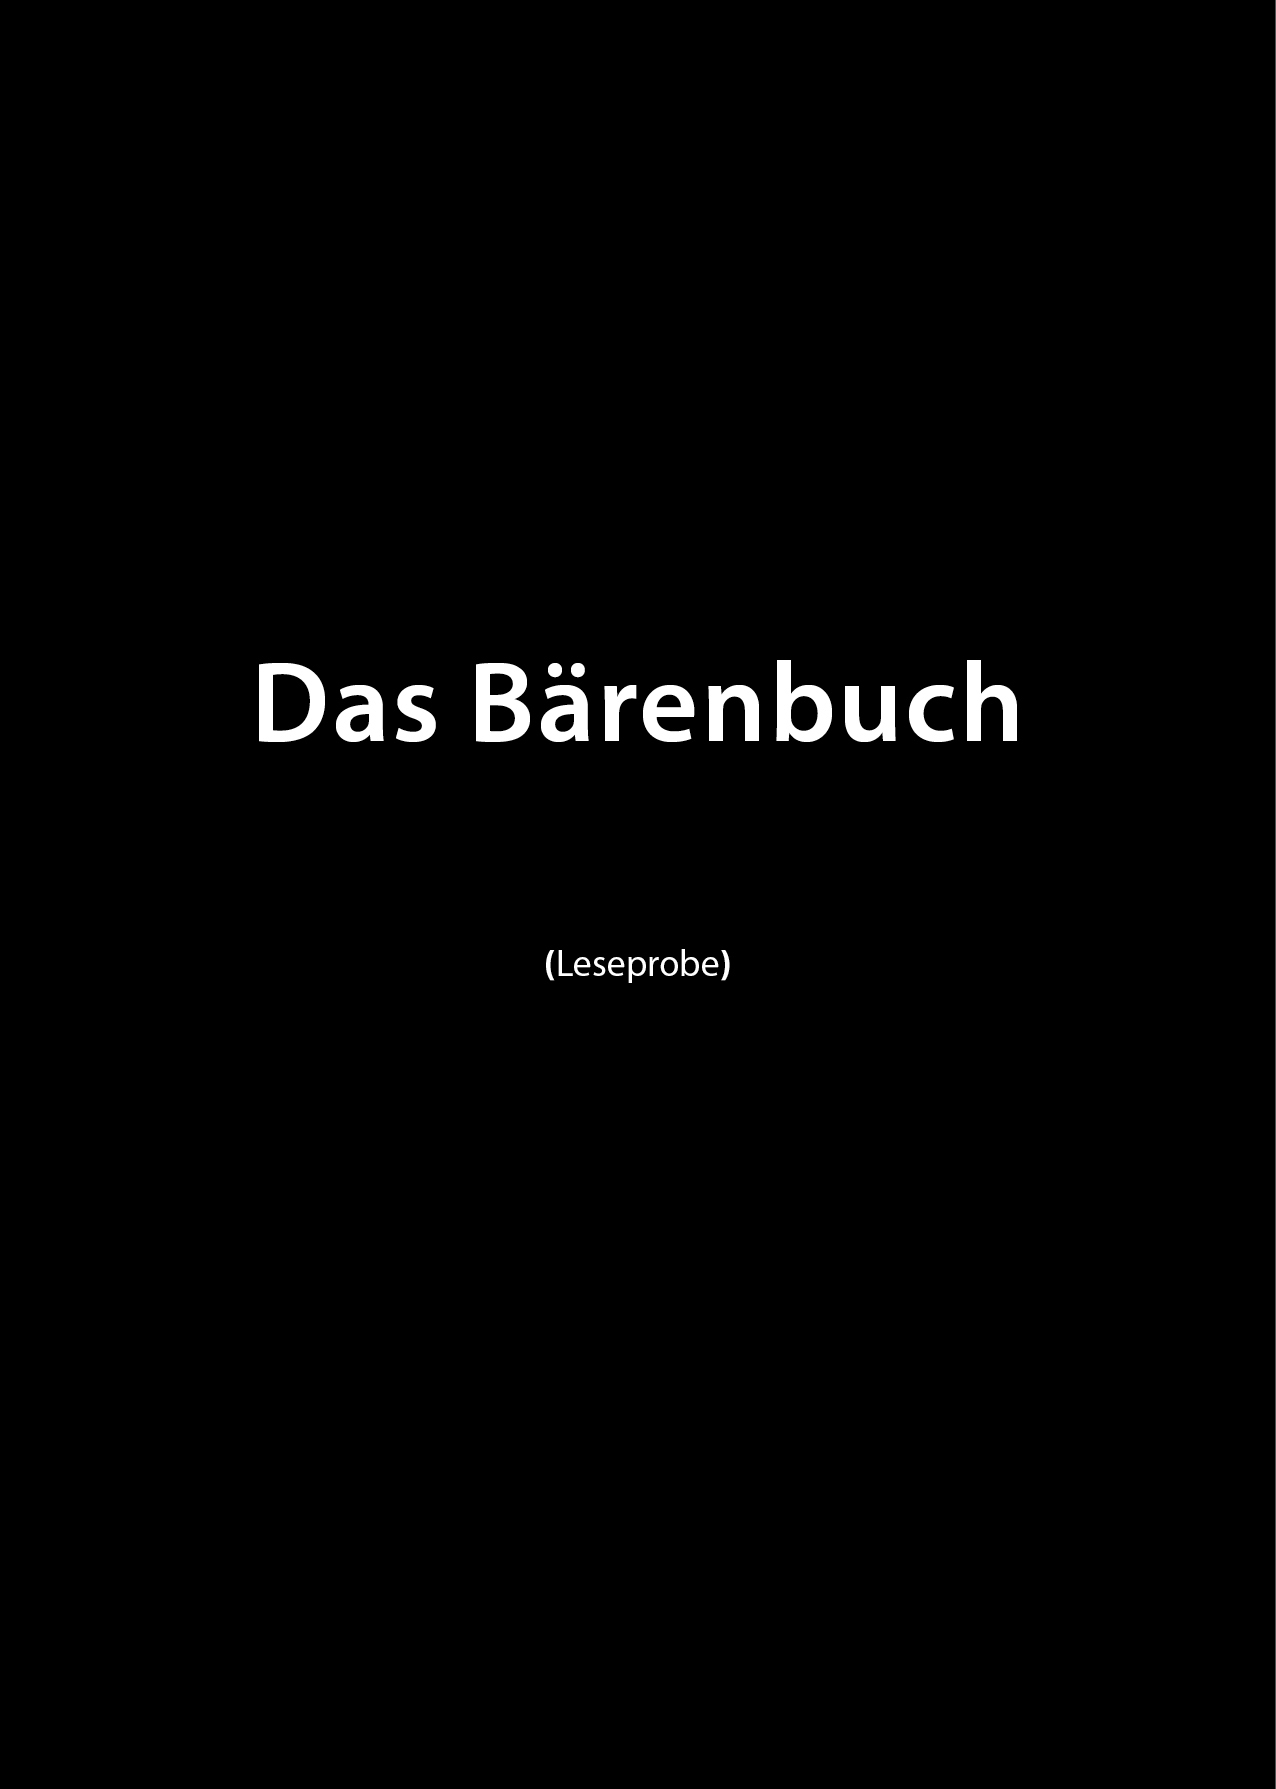 Cover des Bärenbuches